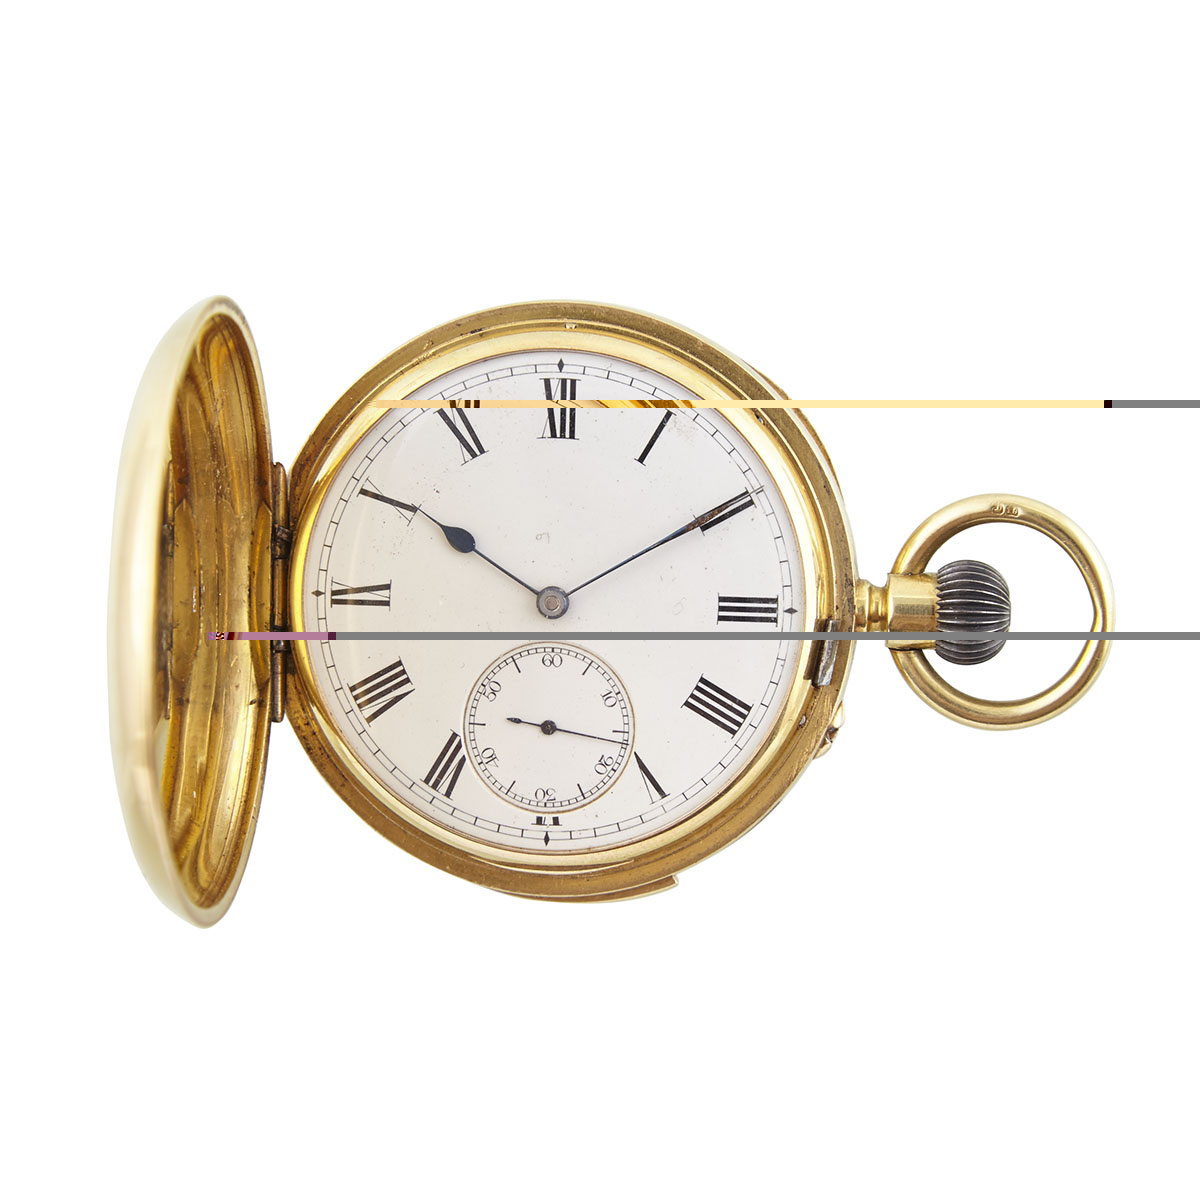 Weill & Harburg Minute Repeat Pin-Set Stem-Wind Pocket Watch